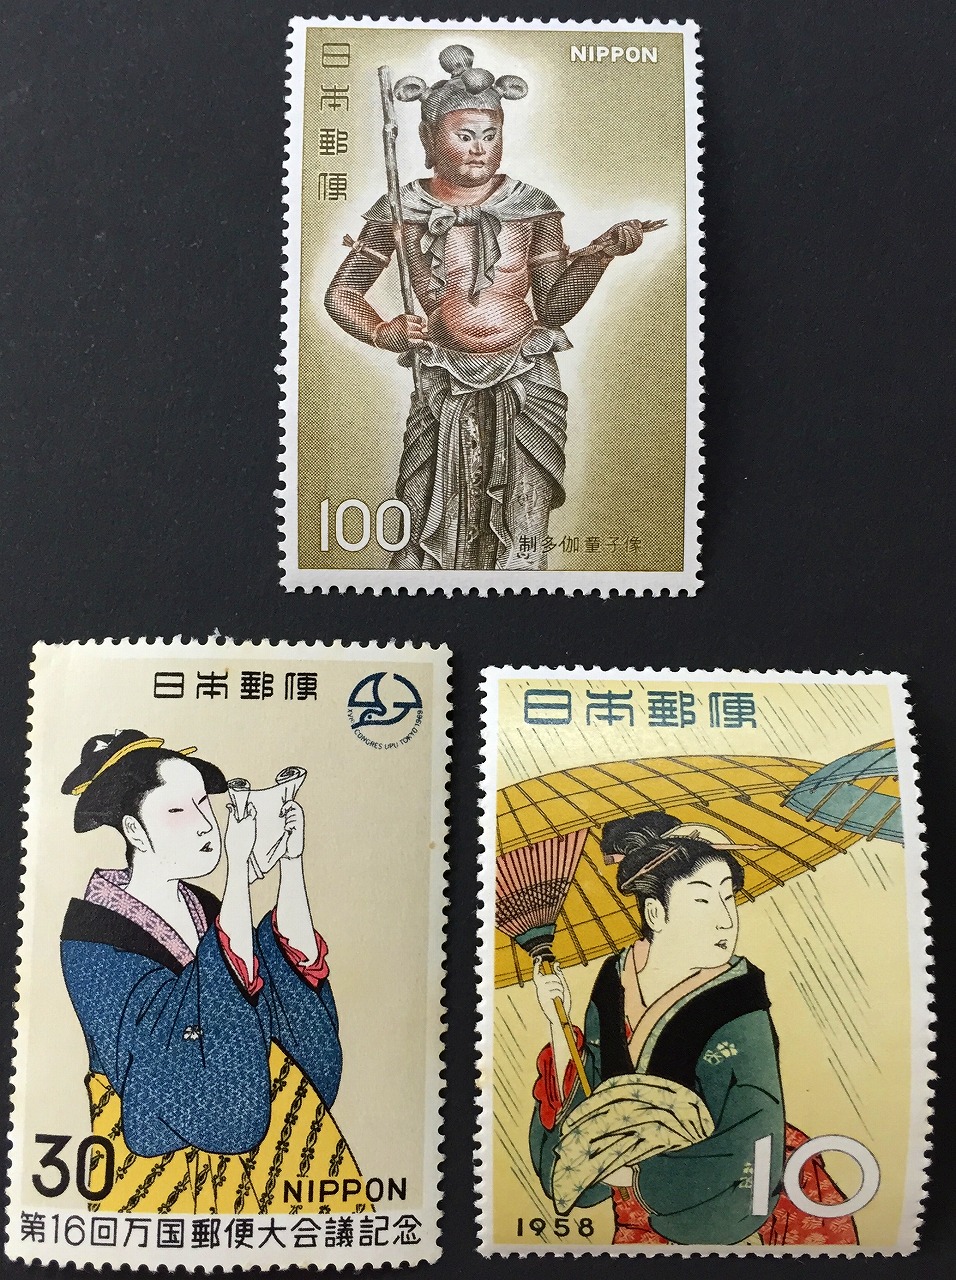 制多伽童子像・第16回万国郵便大会議記念・1958年10円